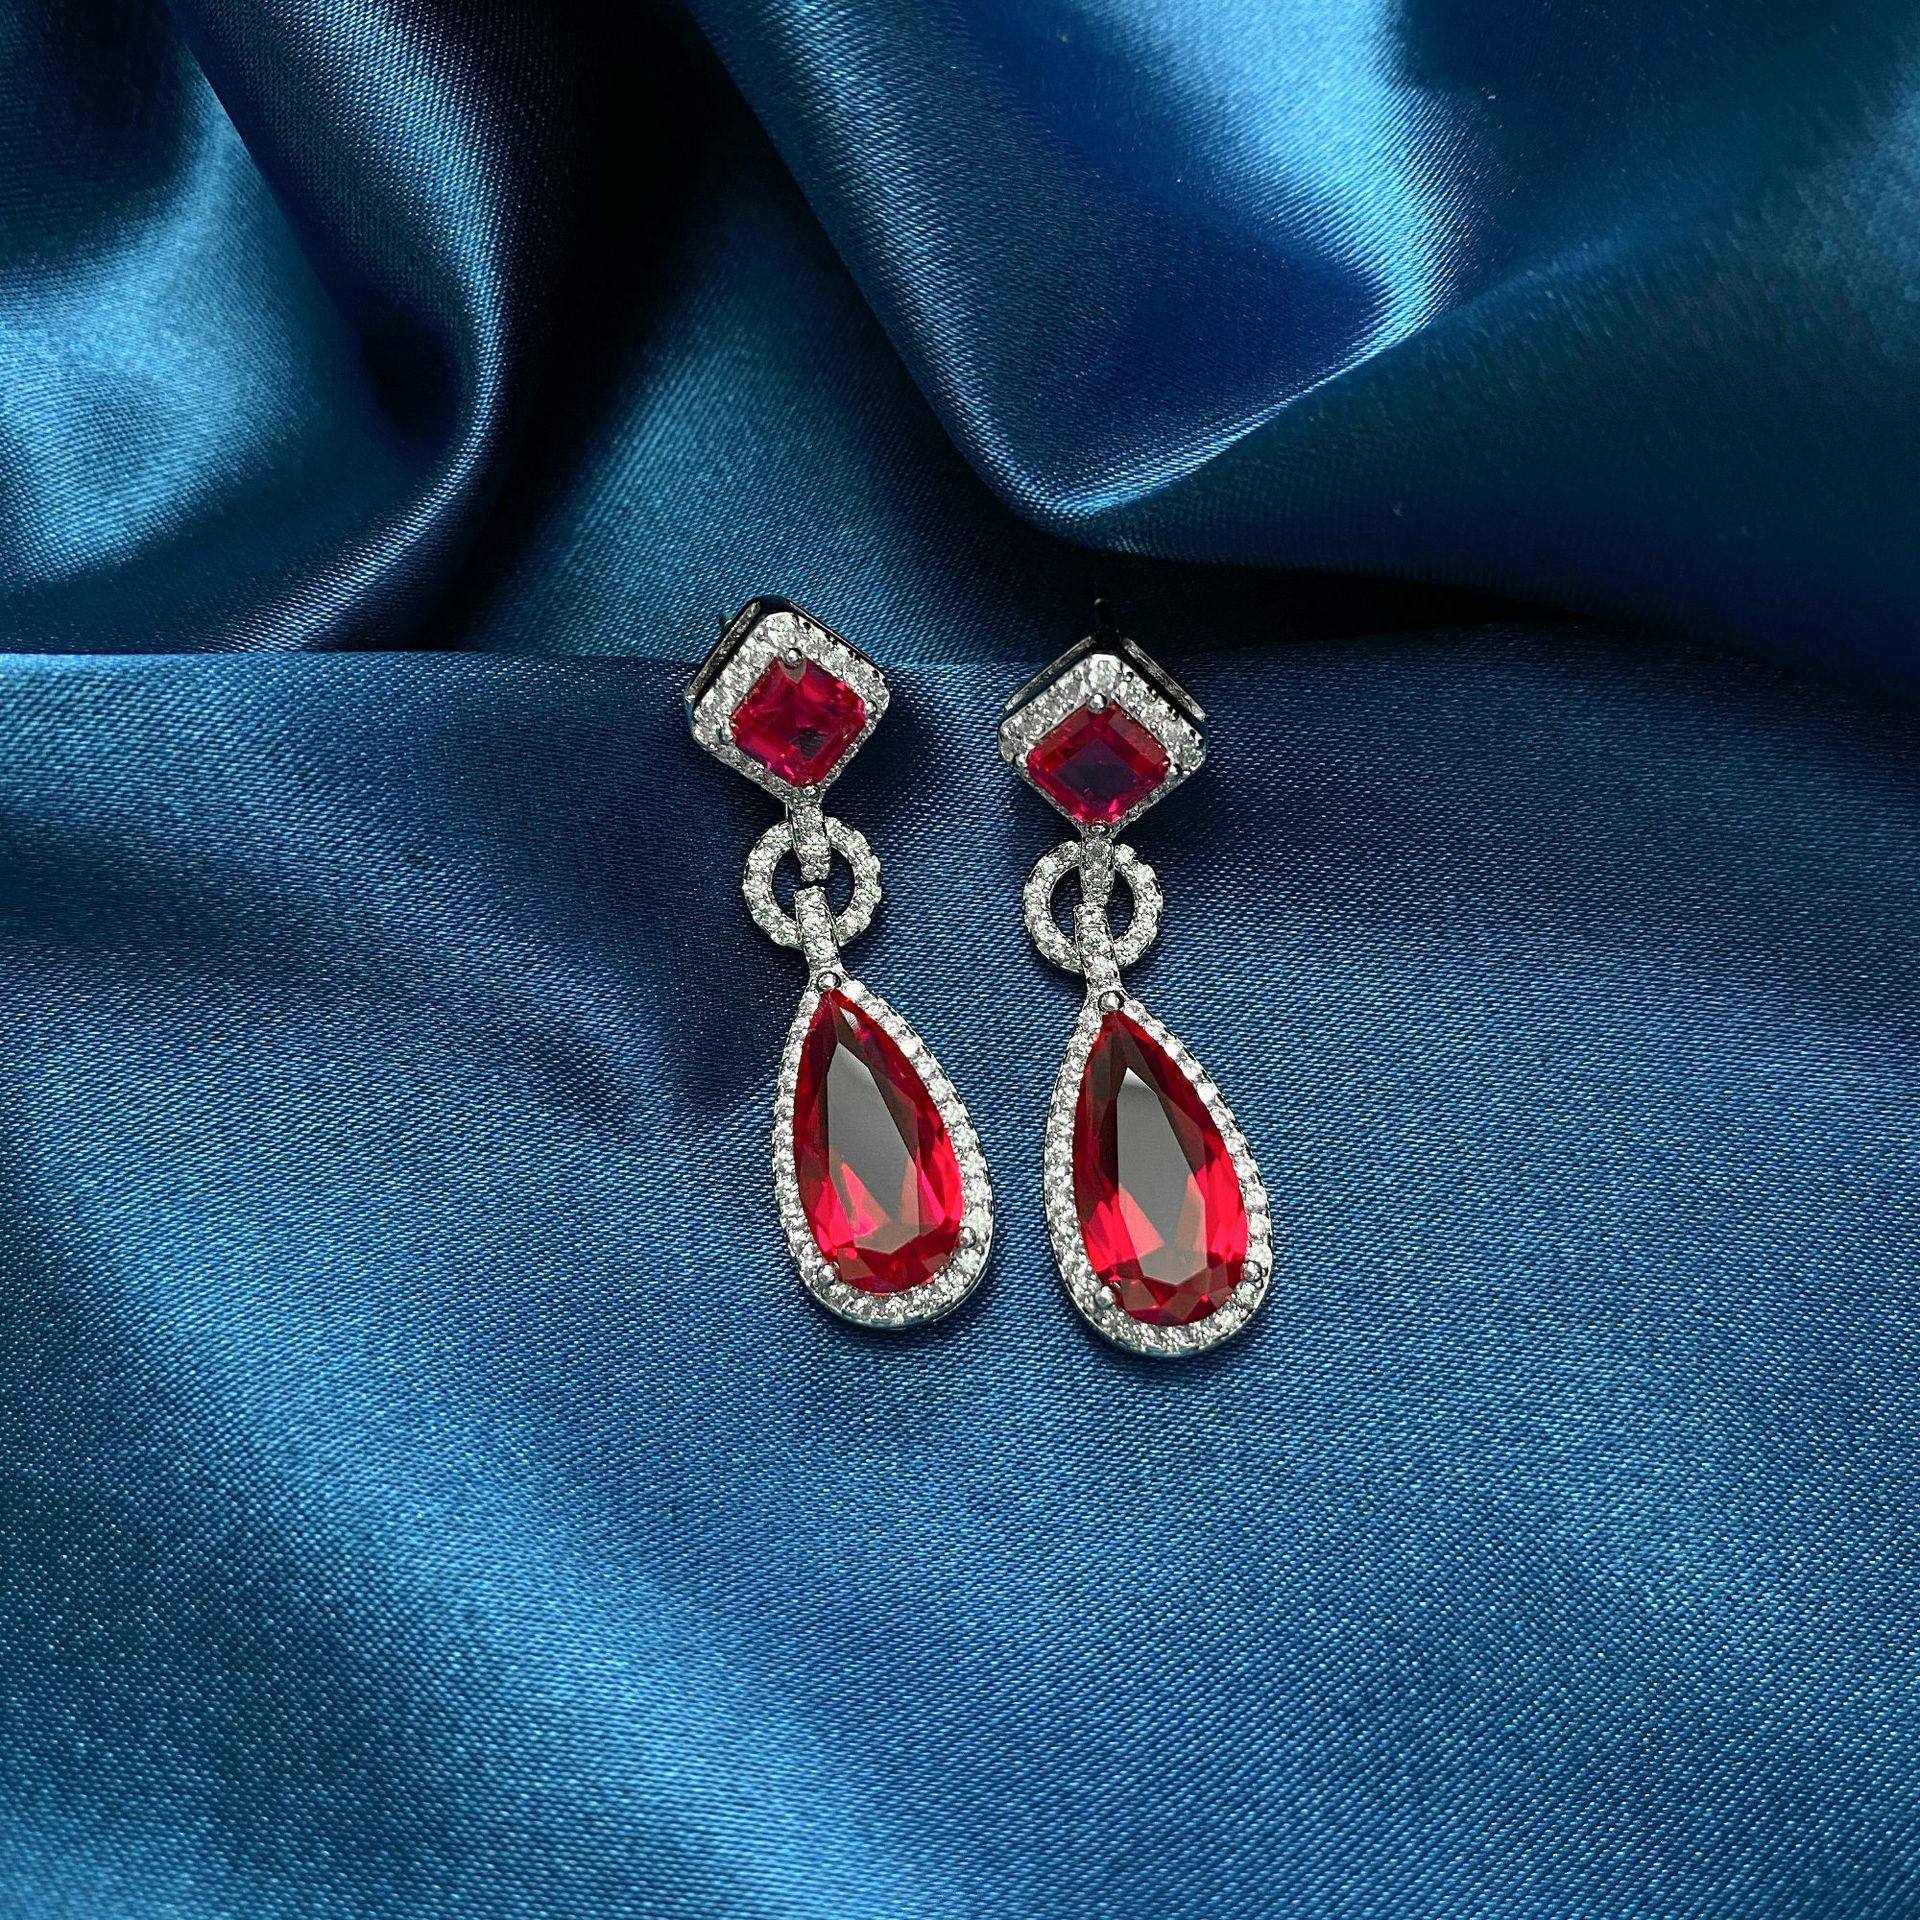 Tear-shaped Ruby Earrings - HER'S